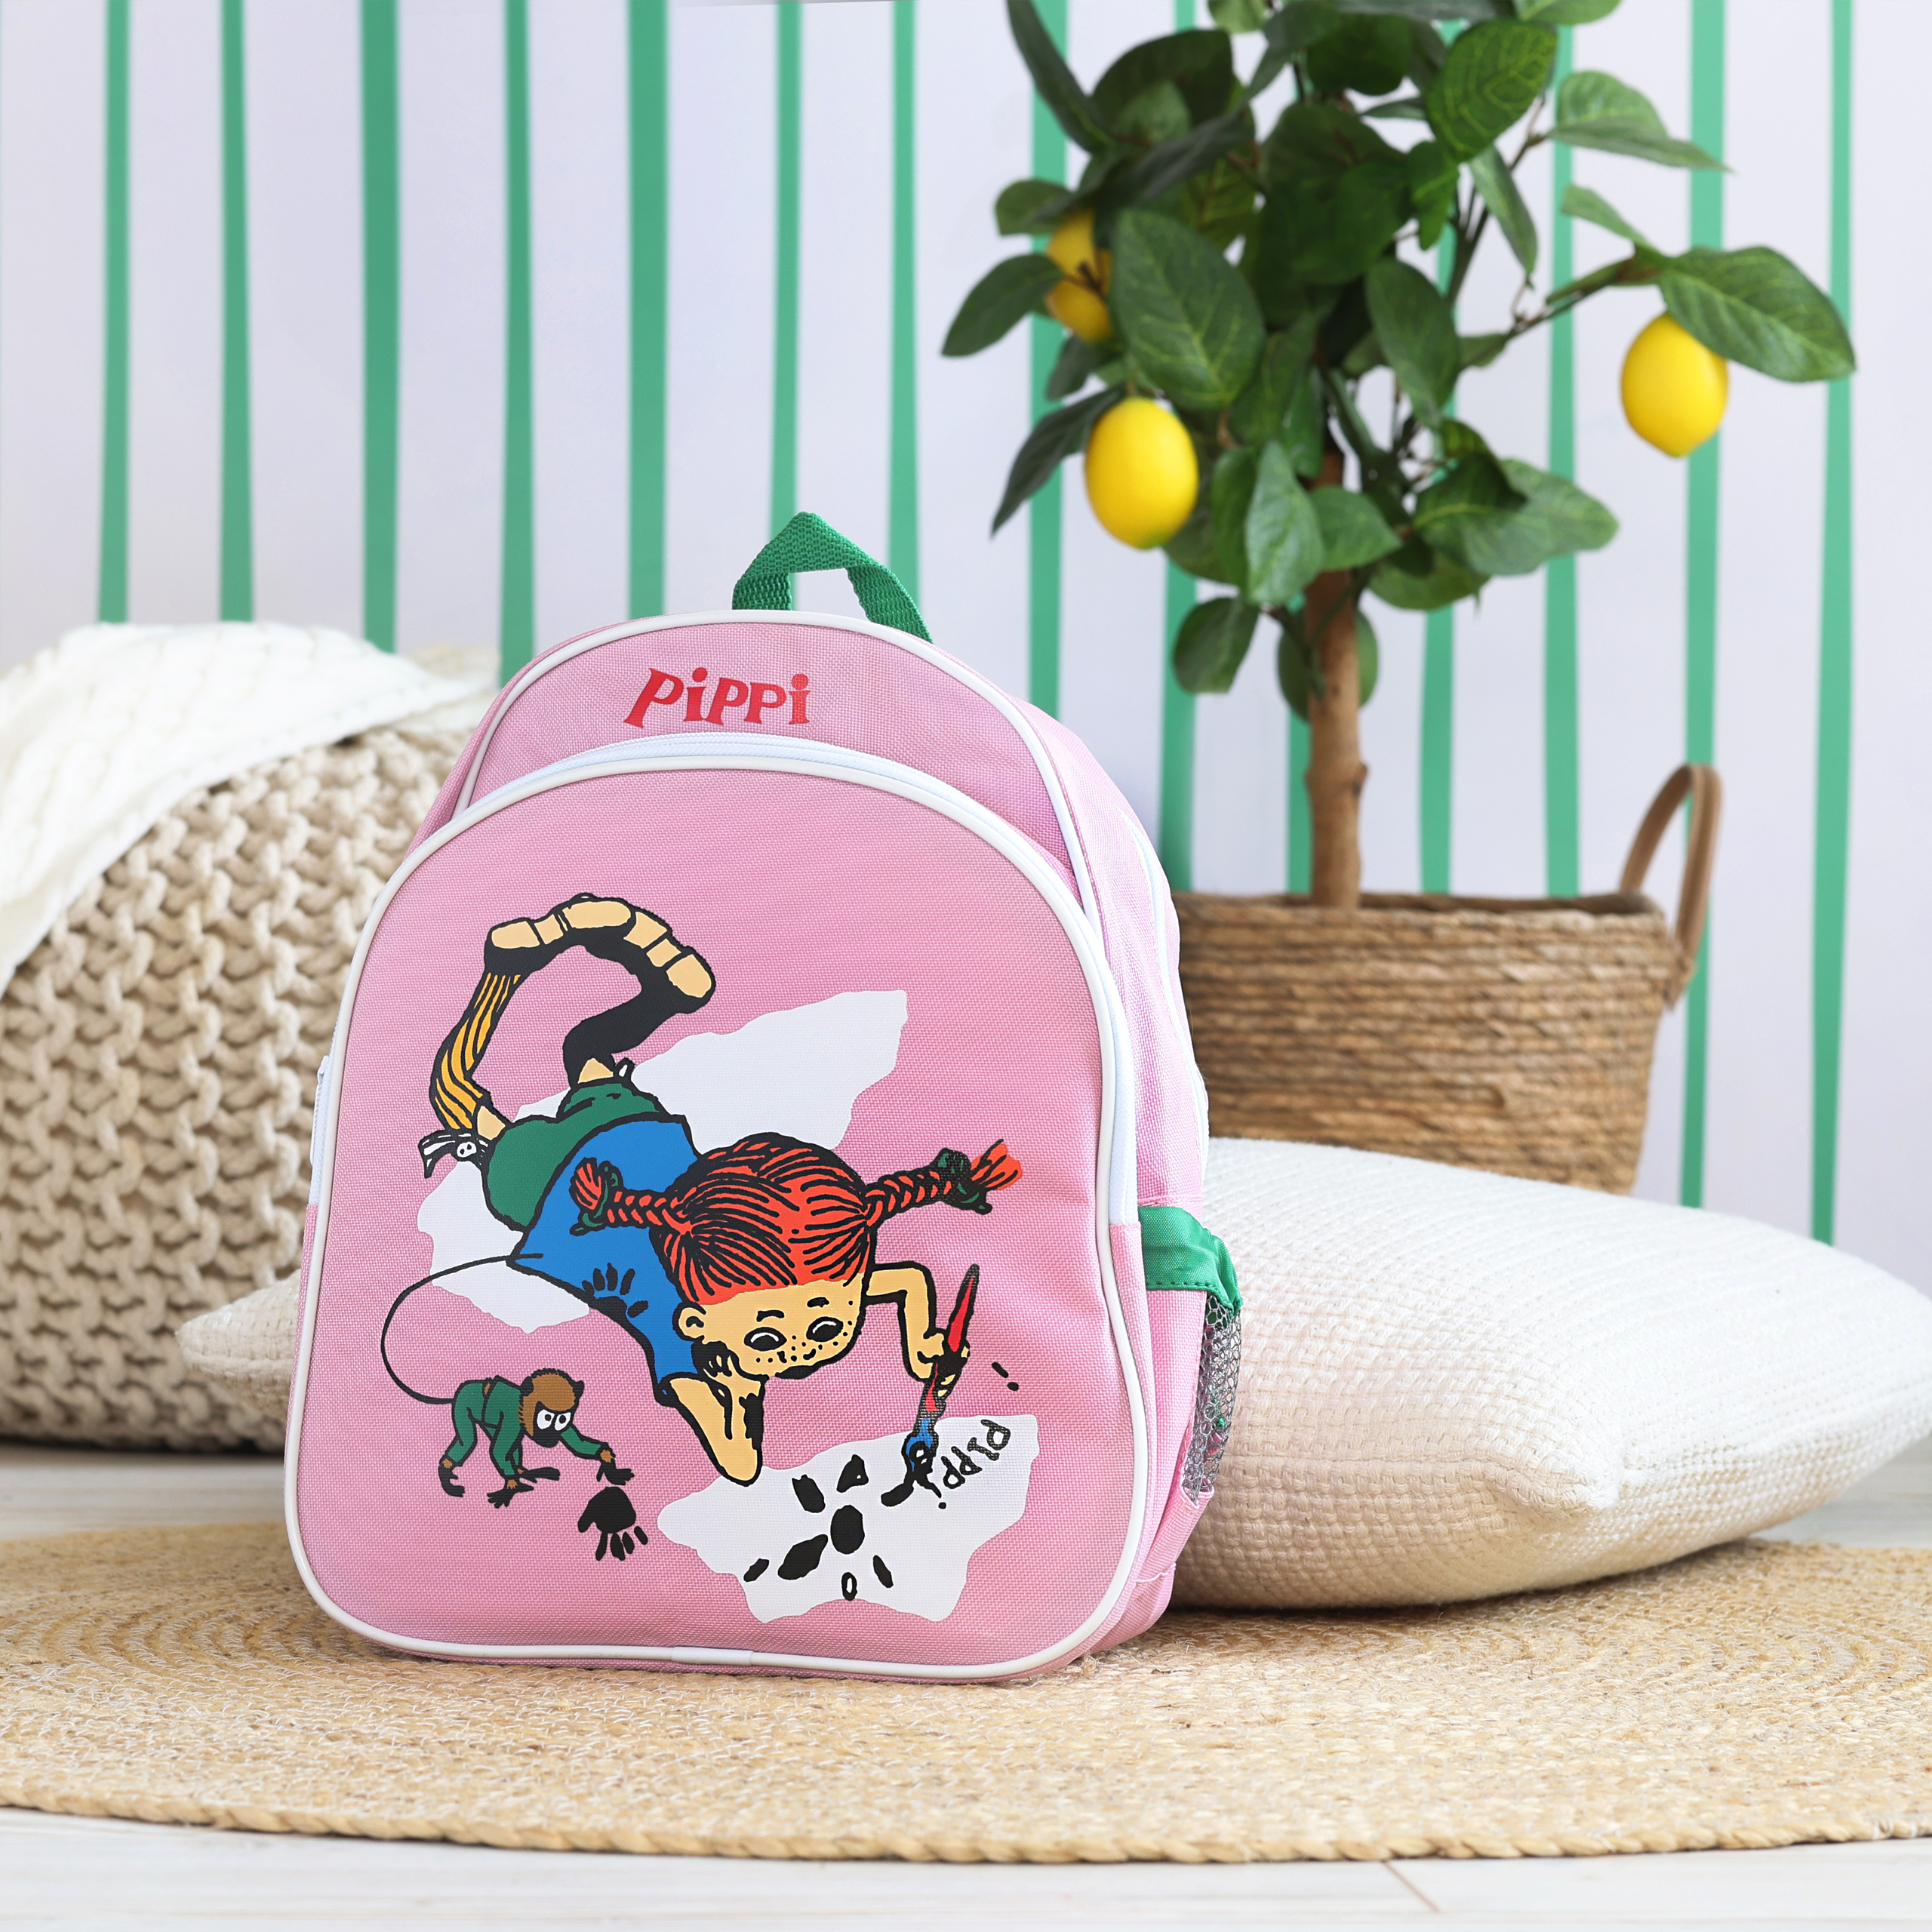 Pippi pippi kindertasche rucksack rosa